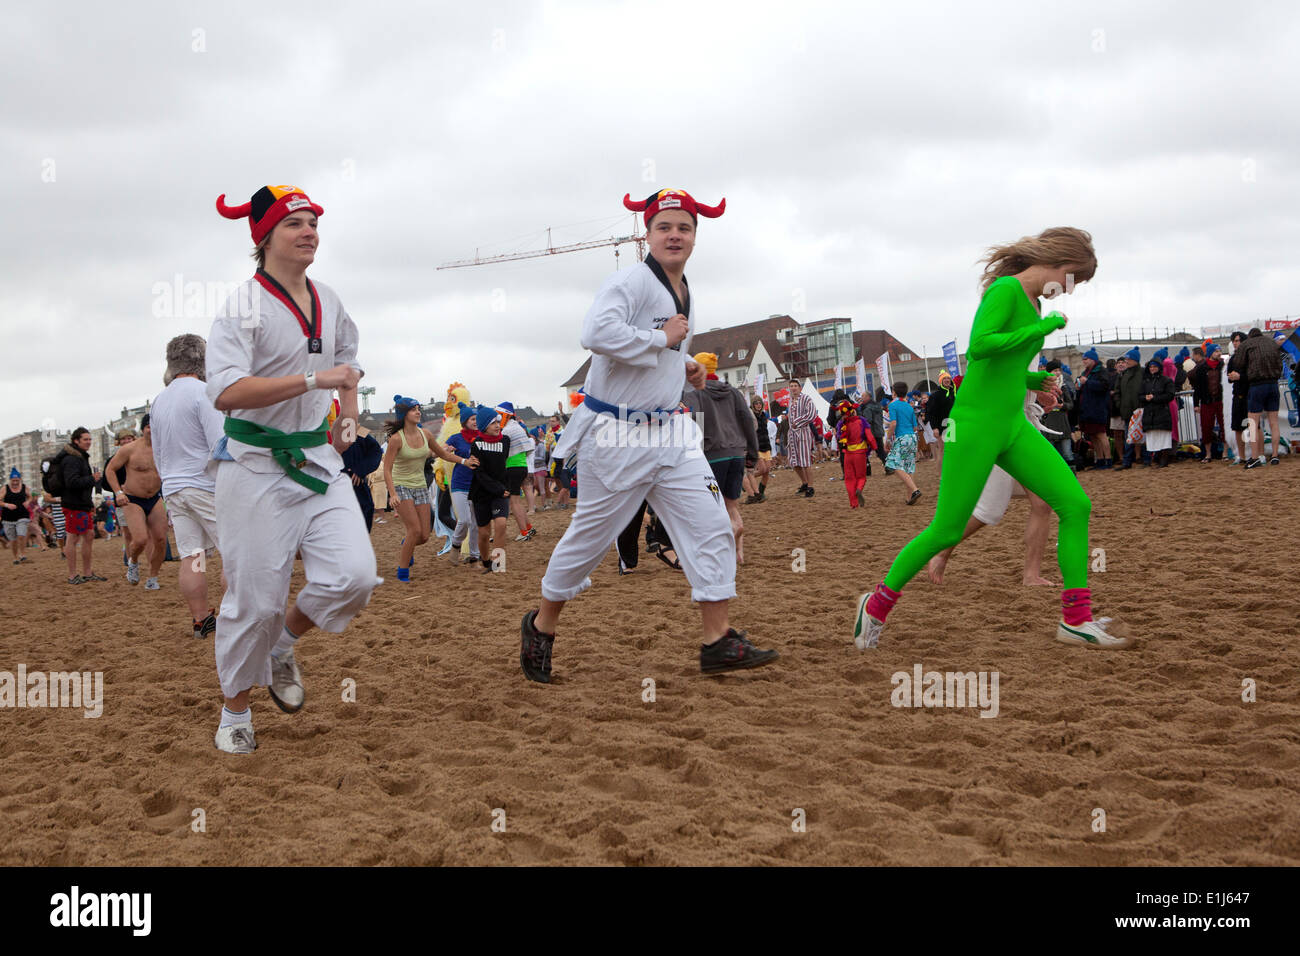 Polar Bear Club Tag der neuen Jahre Feier am Strand, Ostende, Belgien Stockfoto